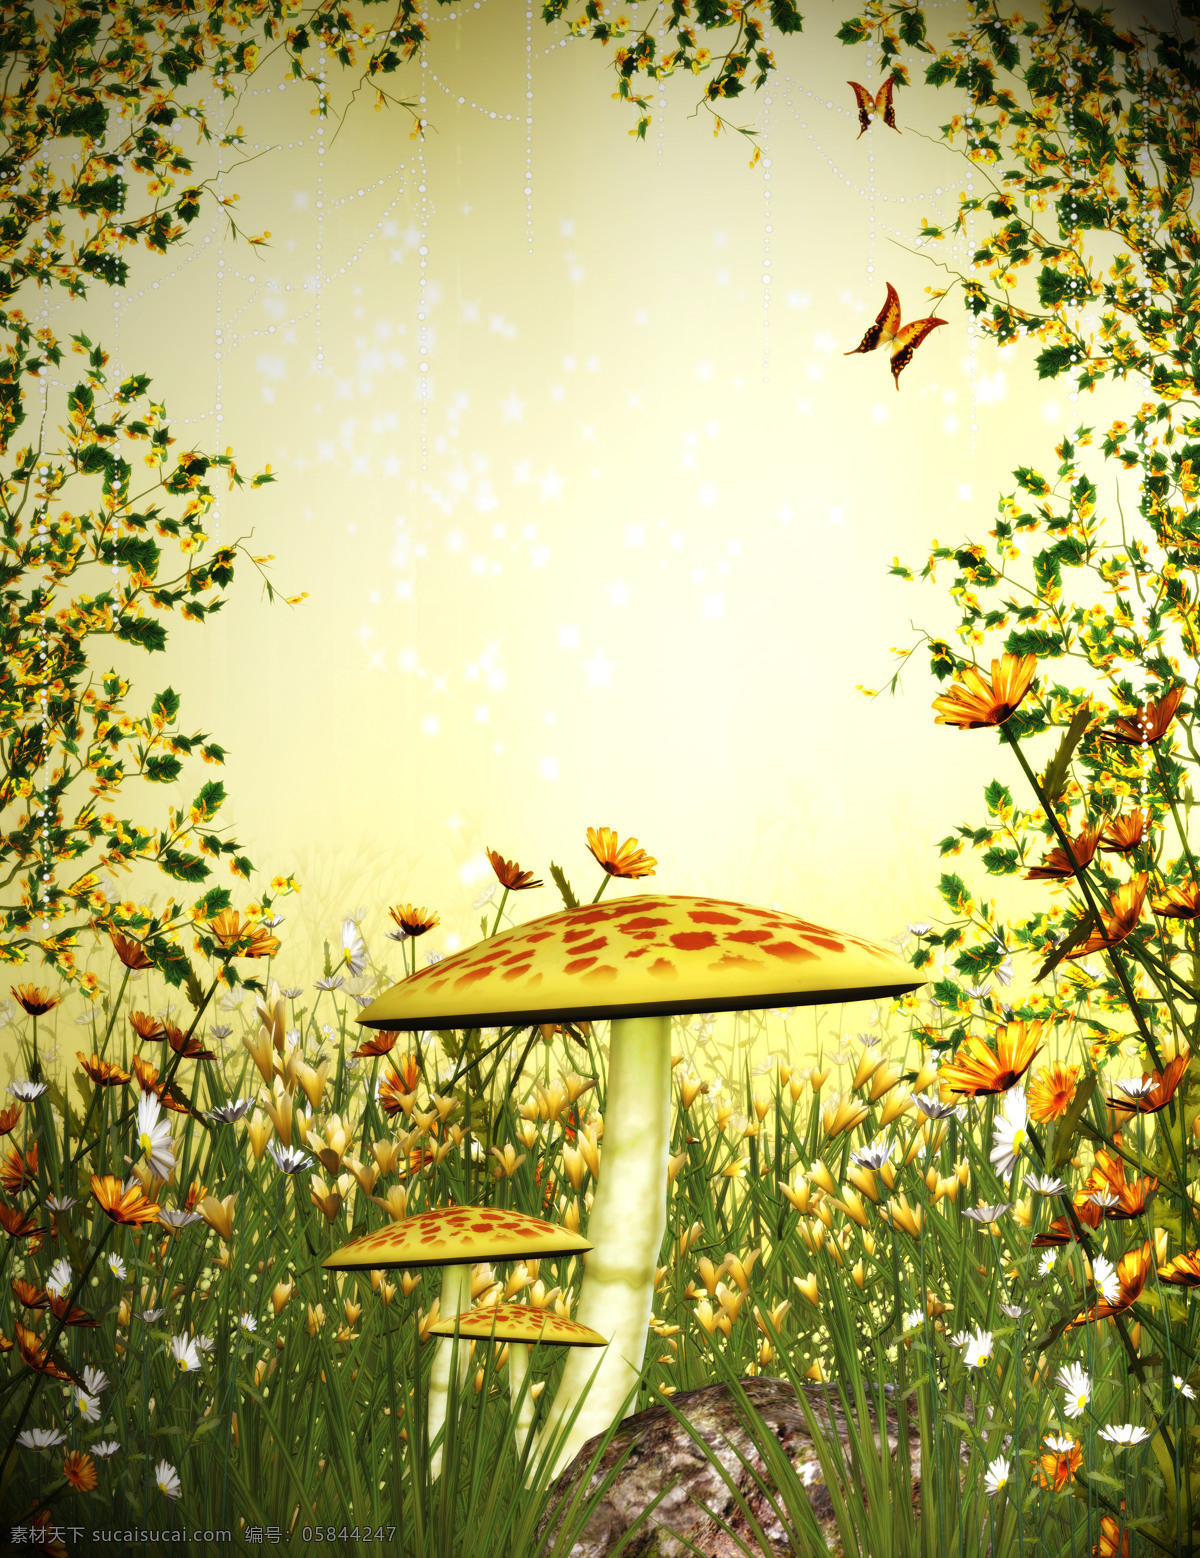 蘑菇花卉风景 蘑菇 花卉 风景 蝴蝶 壁画 风景专辑 动漫动画 风景漫画